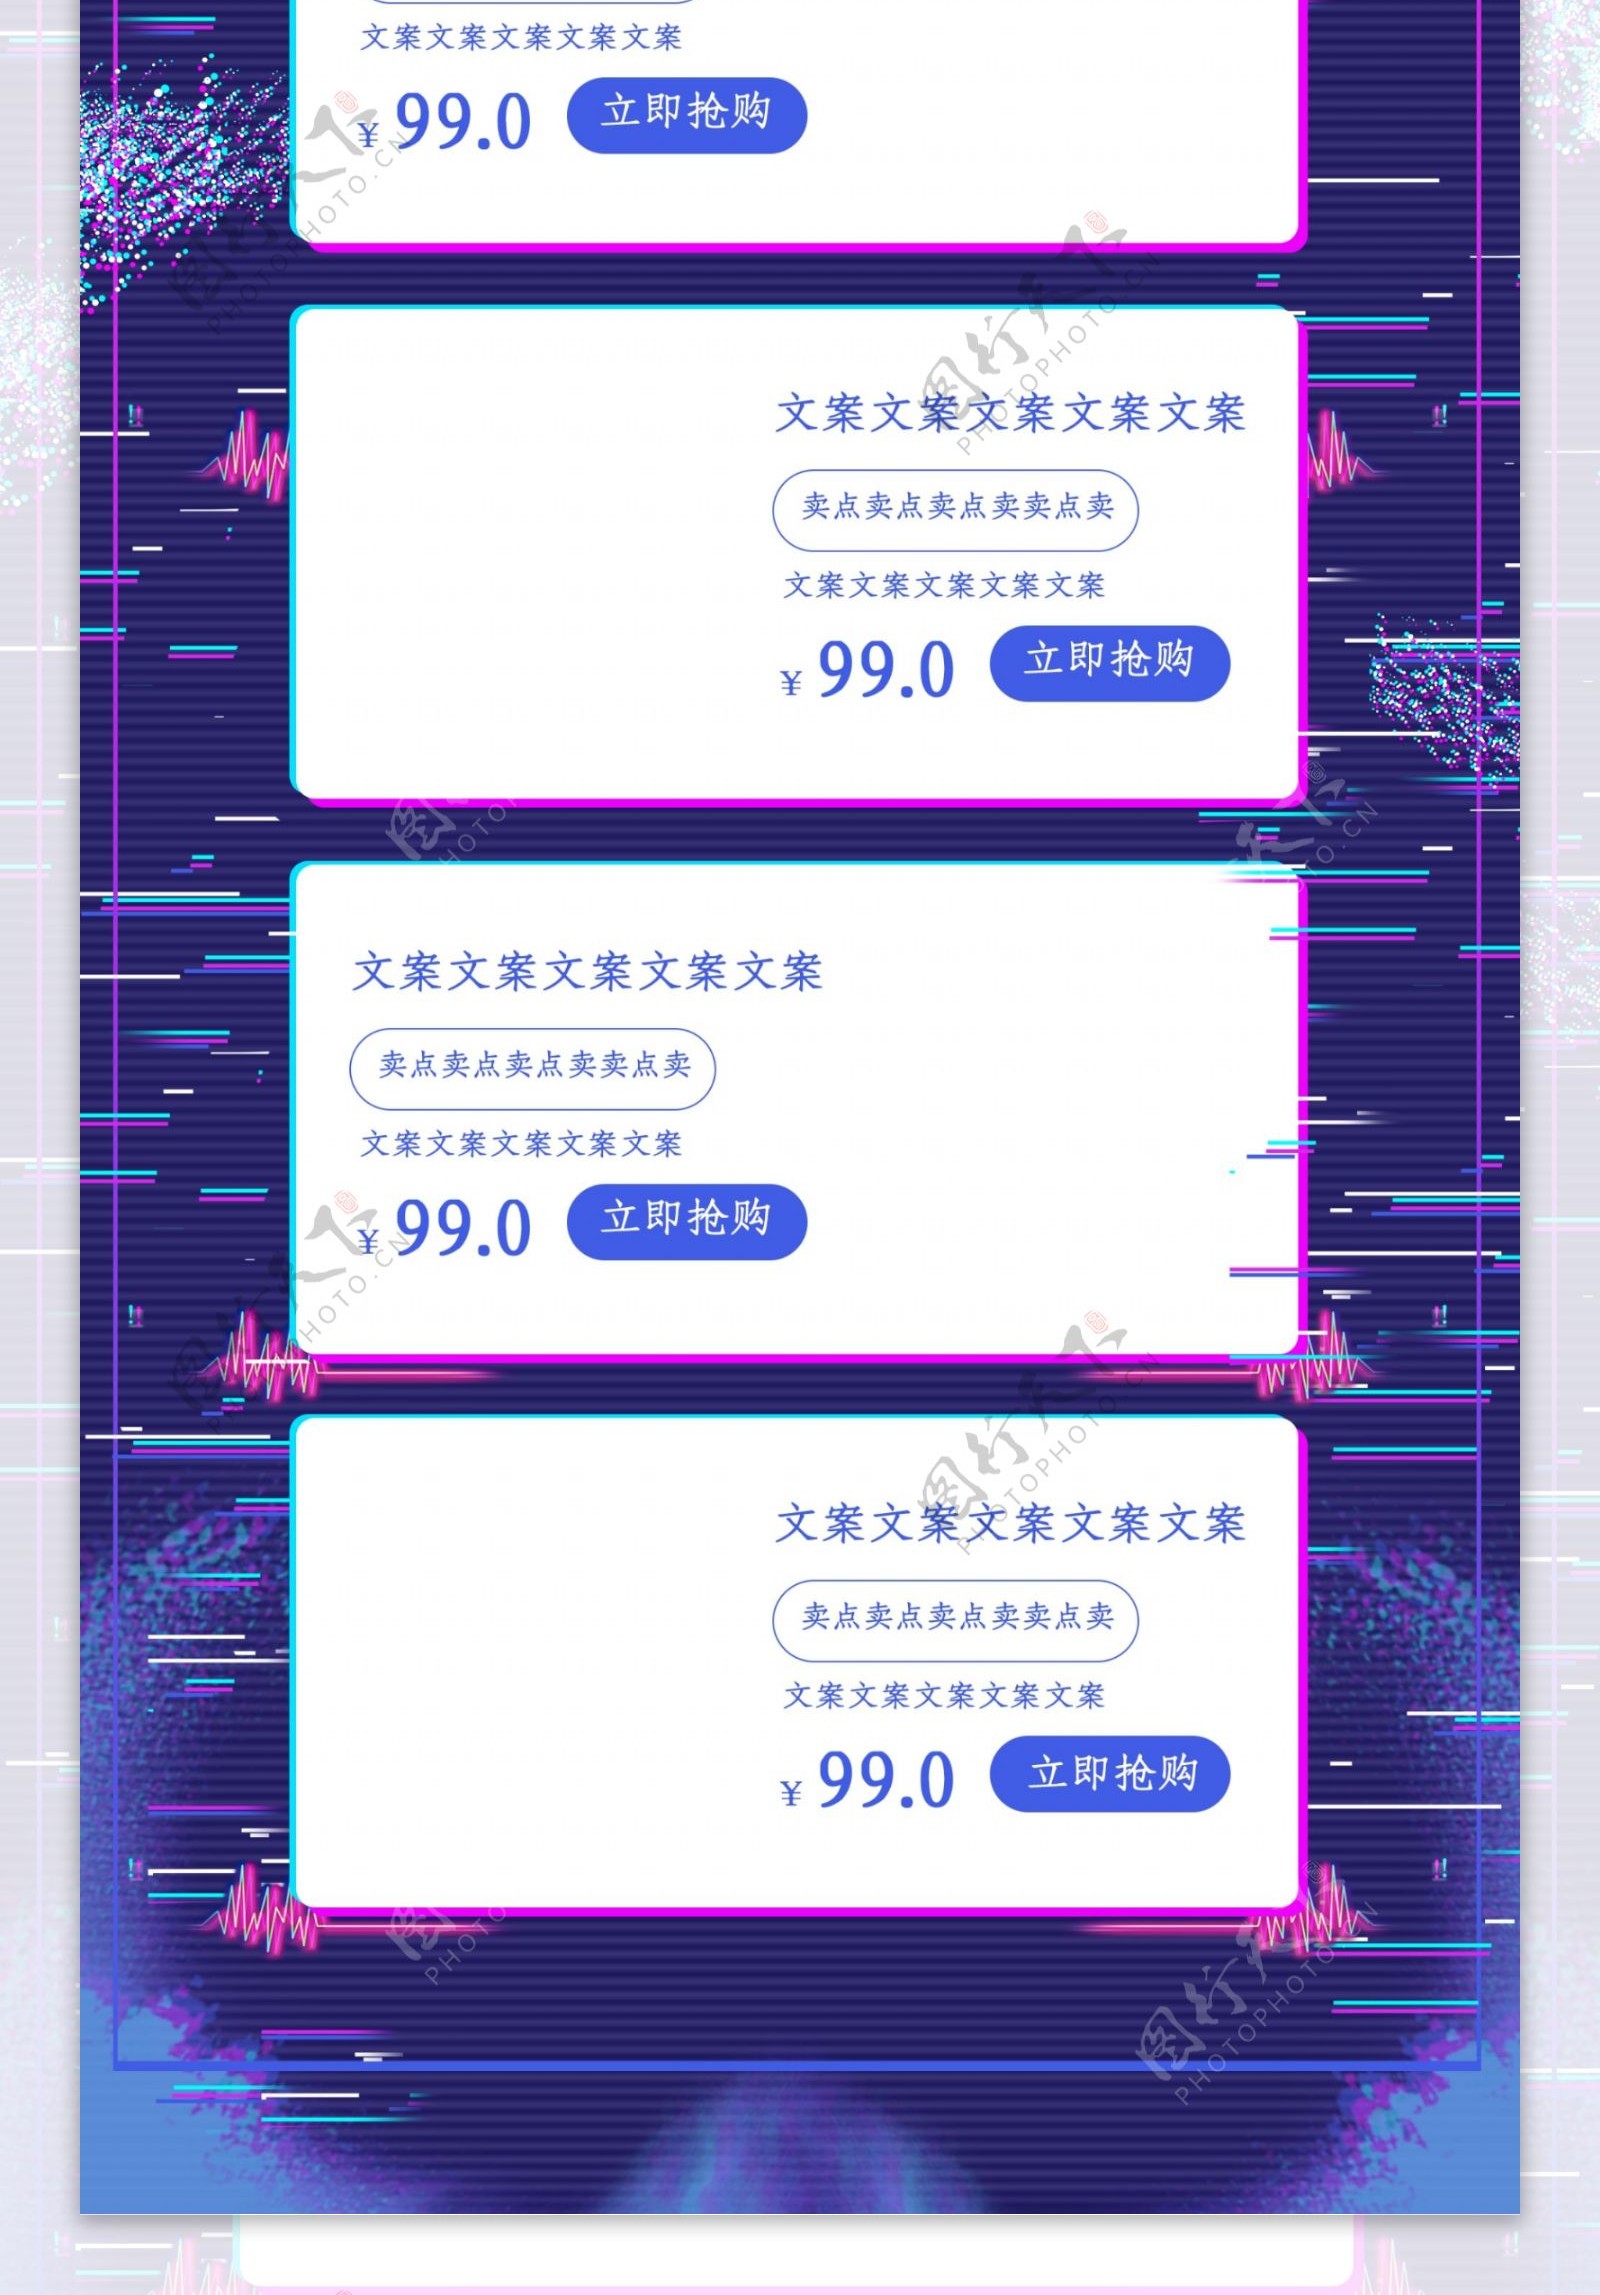 618品质狂欢节C4D酷炫紫色电商淘宝首页模板